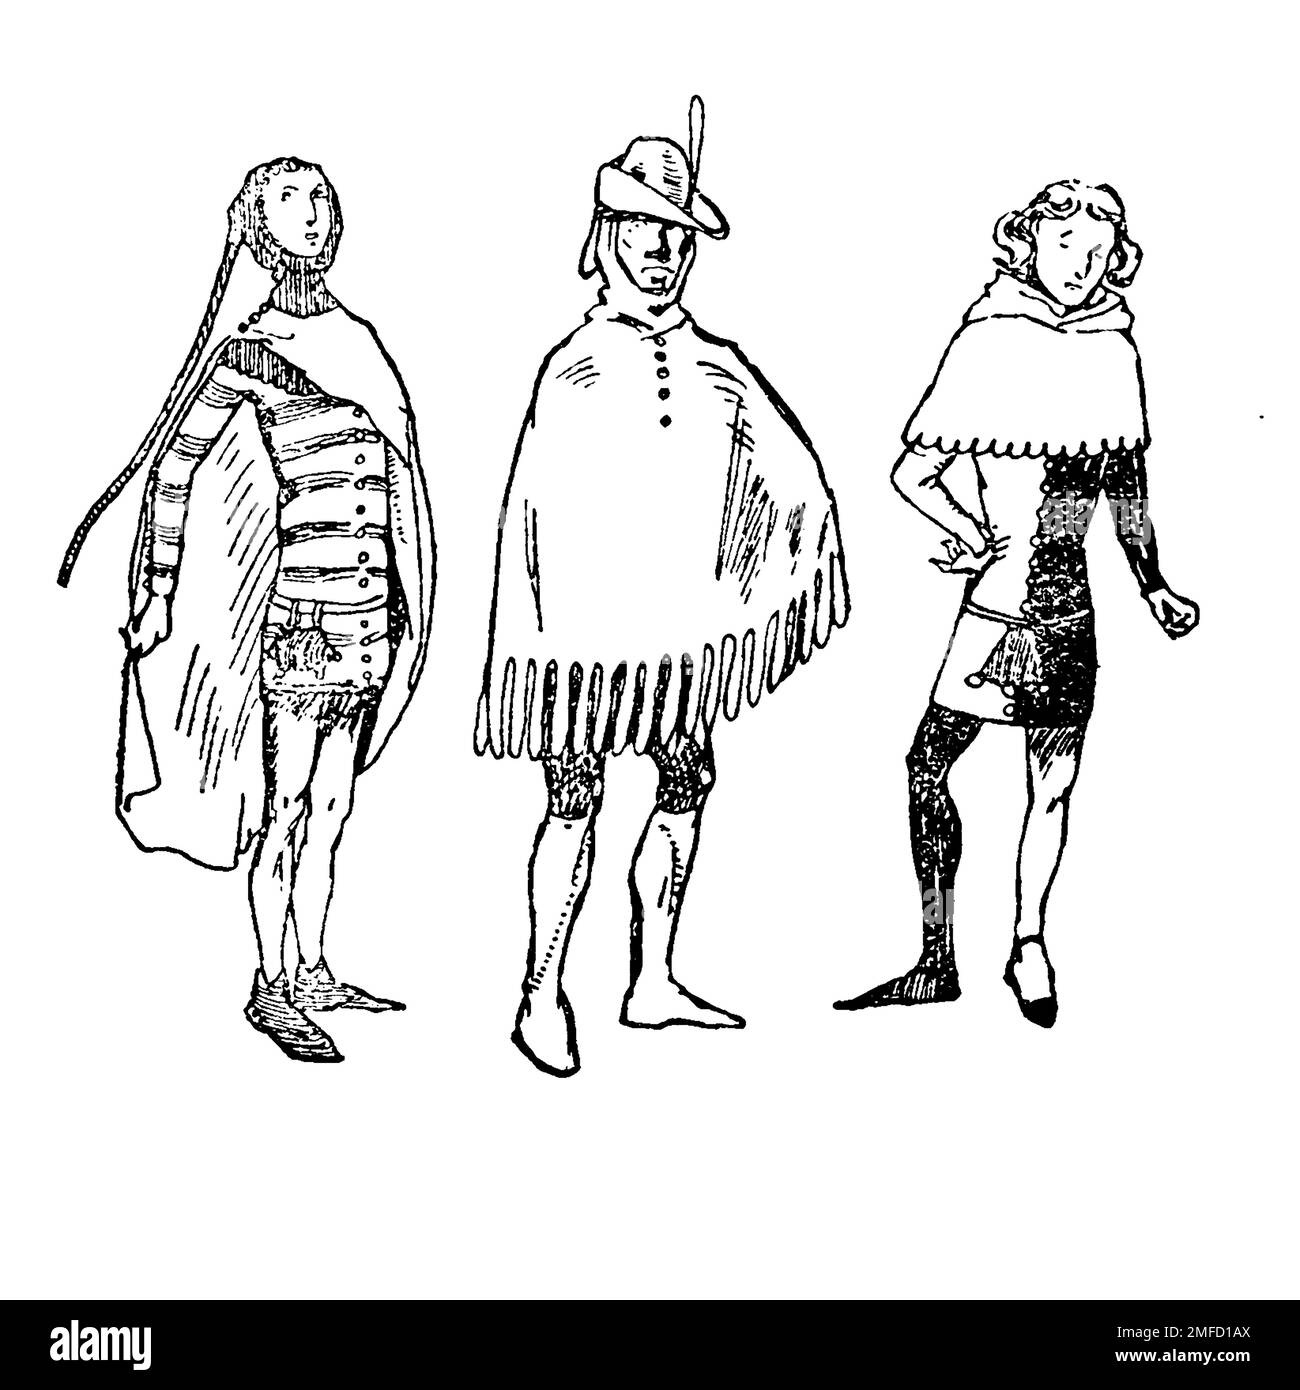 Herrenkostüme der Zeit von Edward II (1307 - 1327) aus dem Buch " English Costume " von Dion Clayton Calthrop, 1878-1937 Publikationsdatum 1907 Publisher London, A. & C. Black Stockfoto